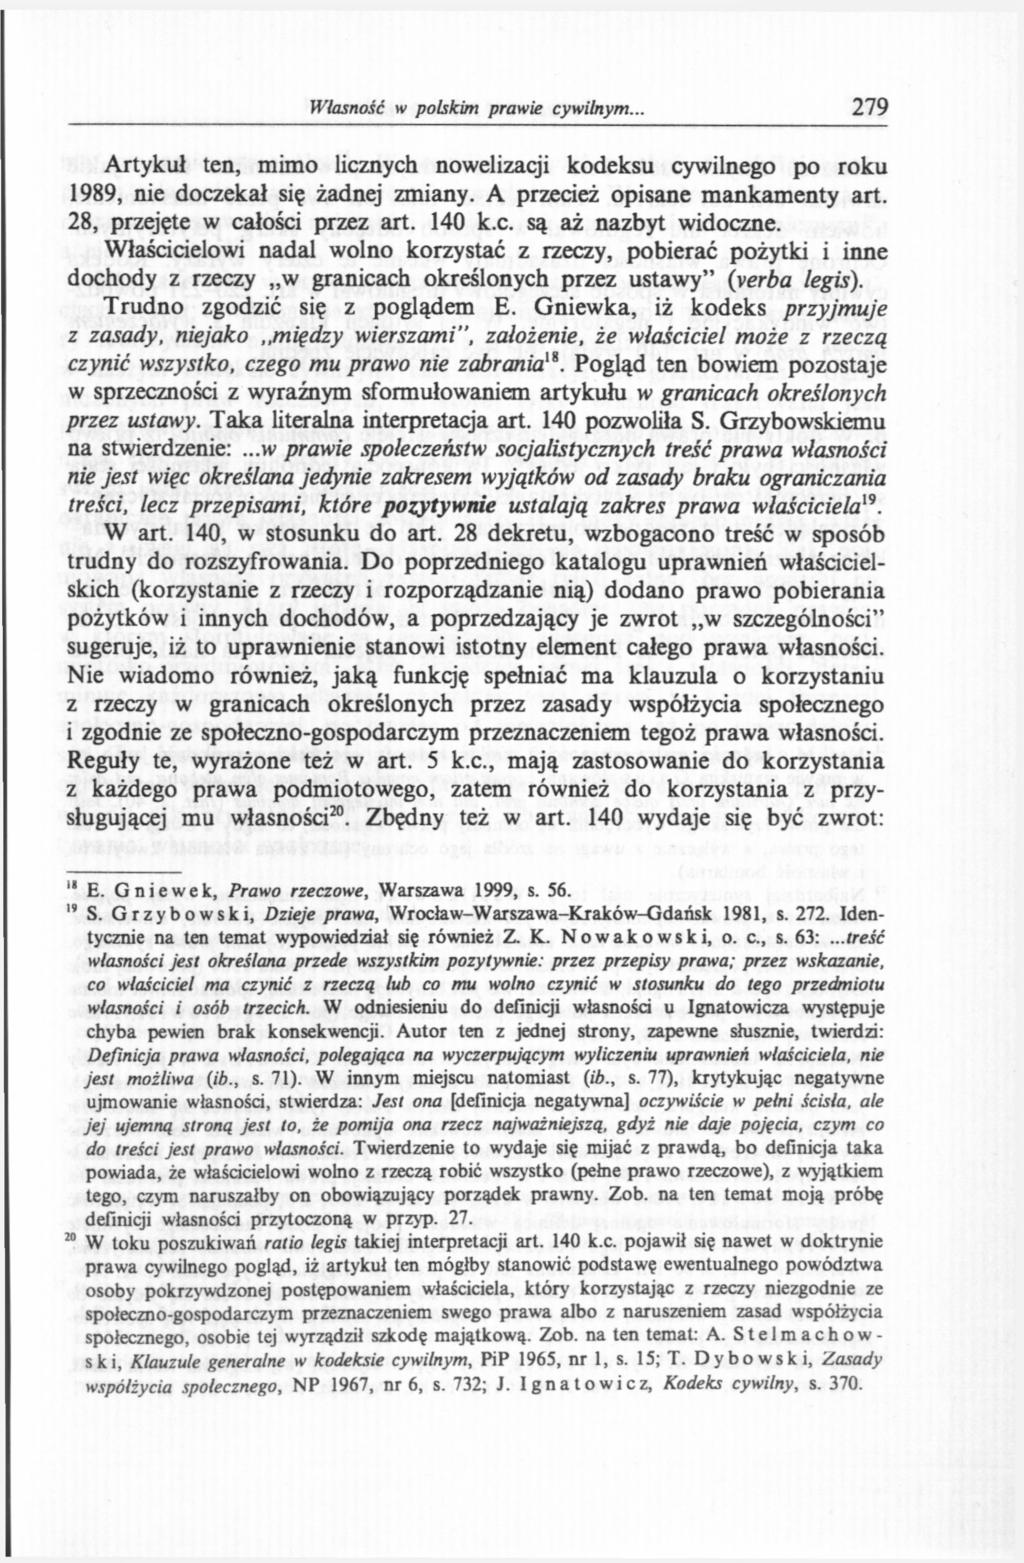 Własność w polskim prawie cywilnym.. 279 Artykuł ten, mimo licznych nowelizacji kodeksu cywilnego po roku 1989, nie doczekał się żadnej zmiany. A przecież opisane mankamenty art.